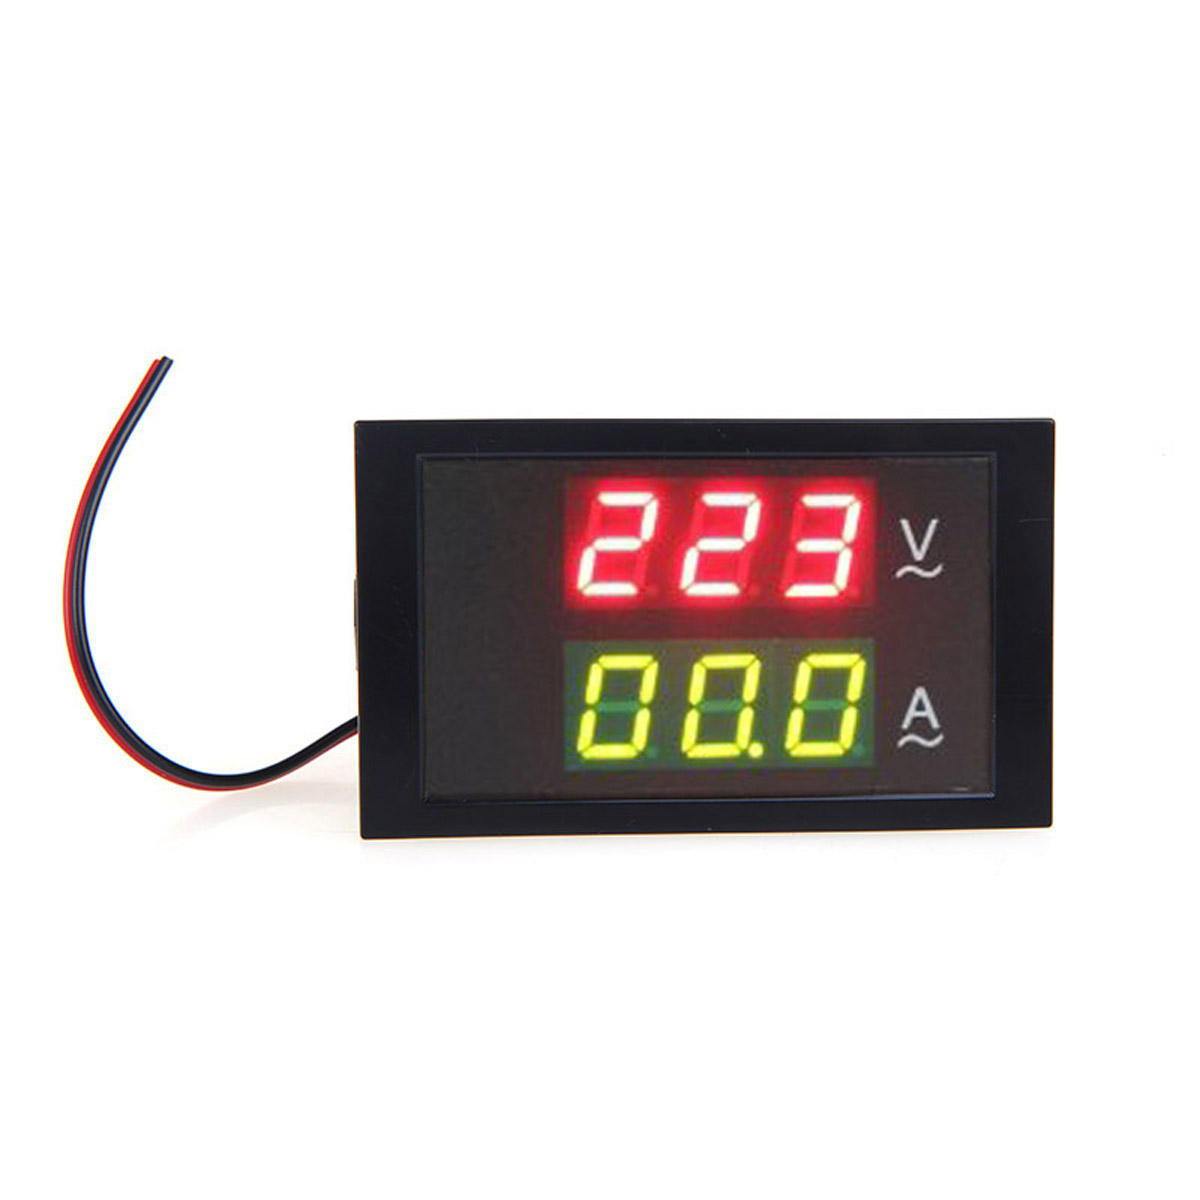 

DL85-2042 Digital LED Voltage Meter Ammeter Voltmeter with Current Transformer AC80-300V 0-100.0A Dual Display